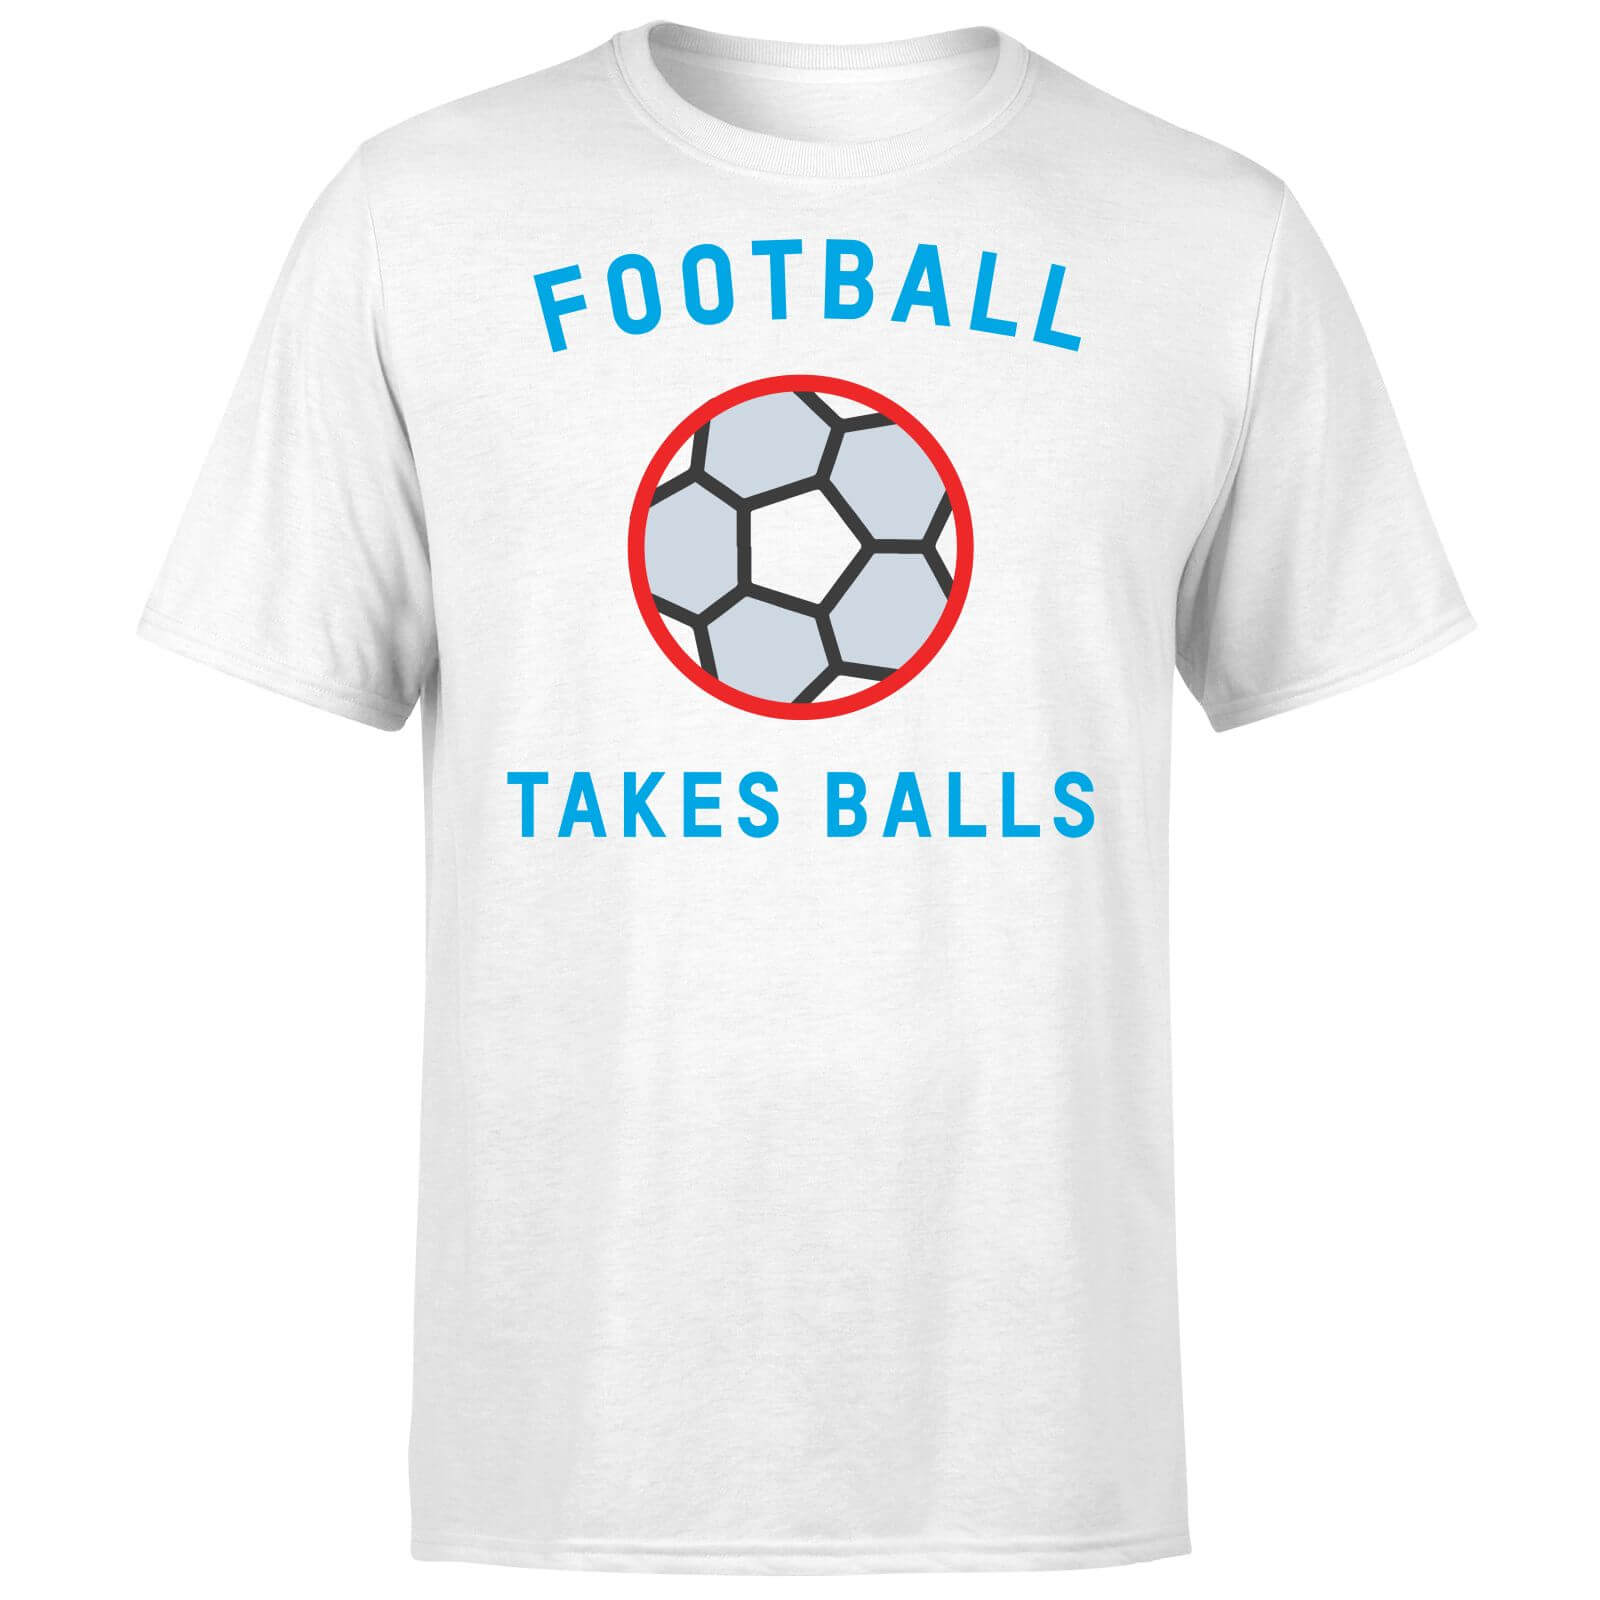 Football Takes Balls T Shirt   White   5XL   White